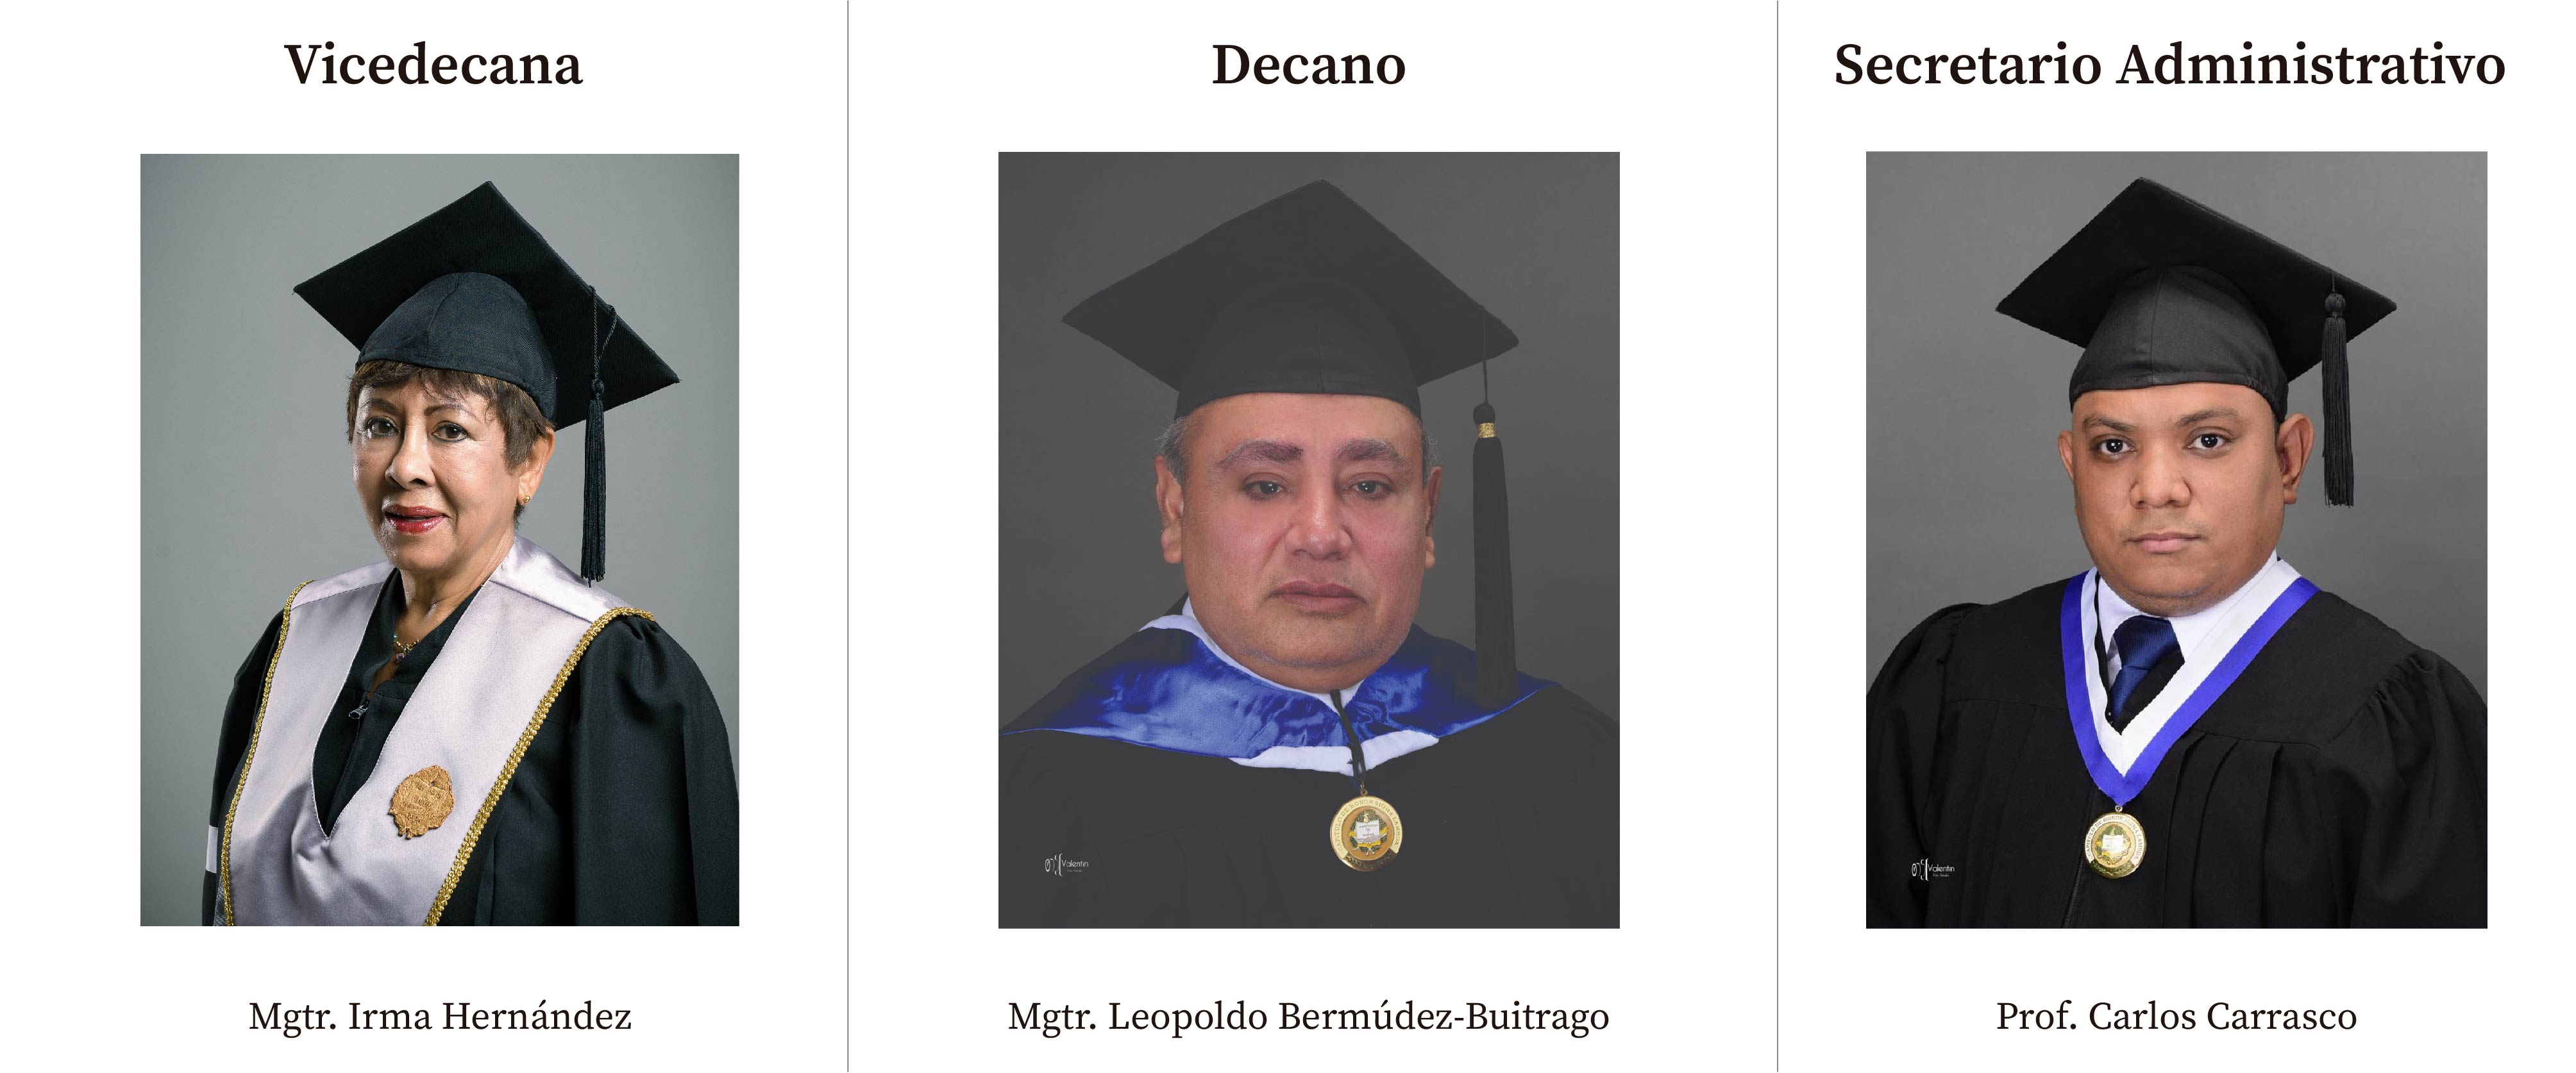 Vicedecana Irma Hernandez, Decano Leopoldo Bermudez-Buitrago, Secretario Administrativo Carlos Carrascos